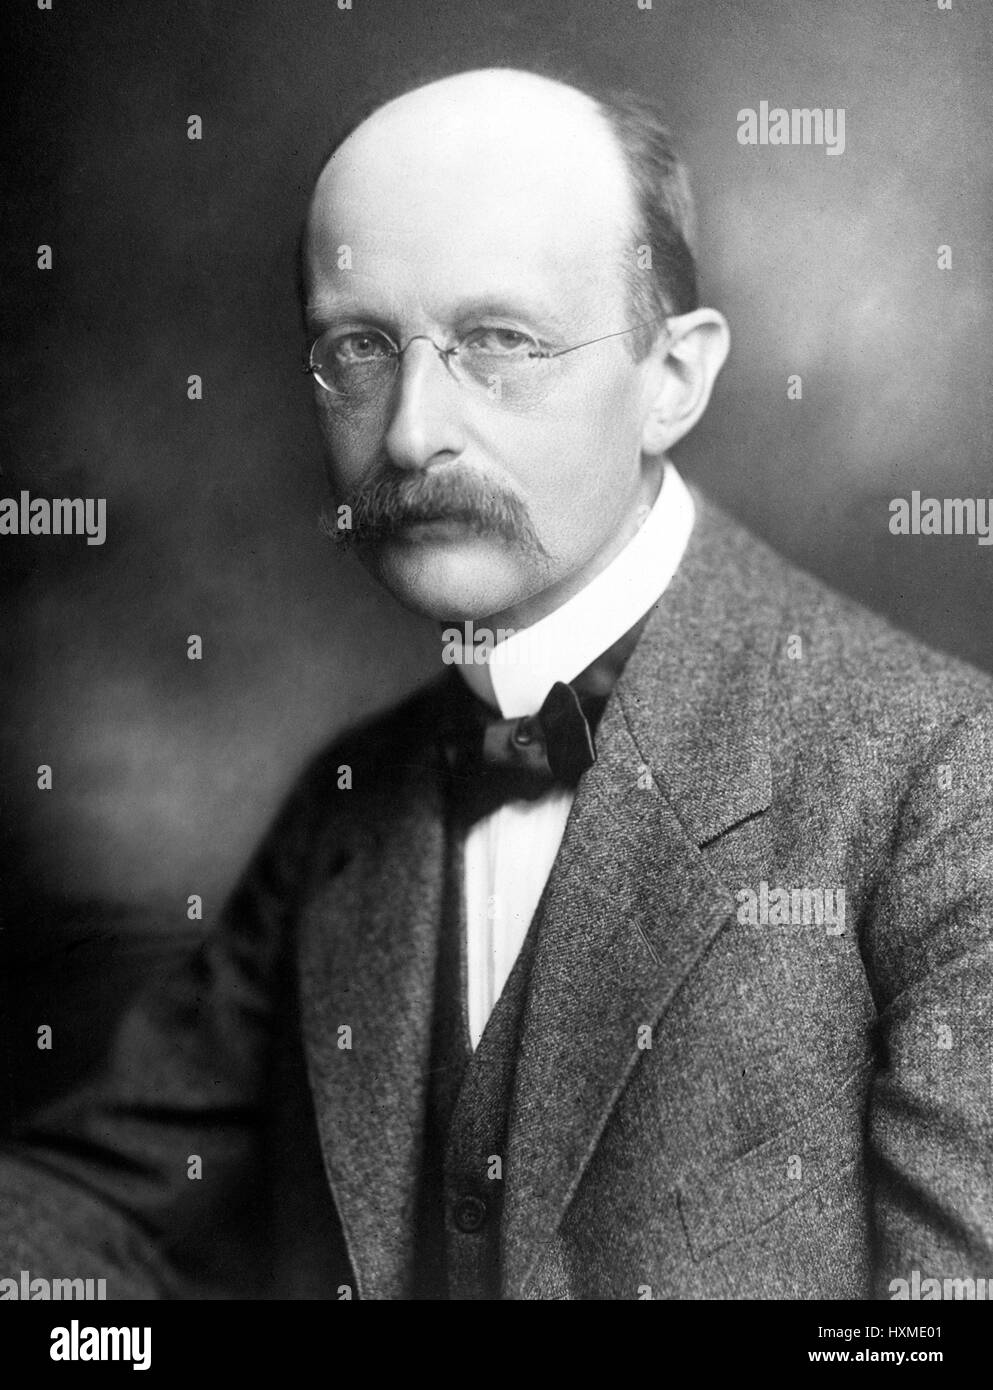 El Profesor Dr. Max Planck, quien fue premiado por la Academia de Ciencias de Suecia el premio Nobel de Física en 1918. Foto de stock